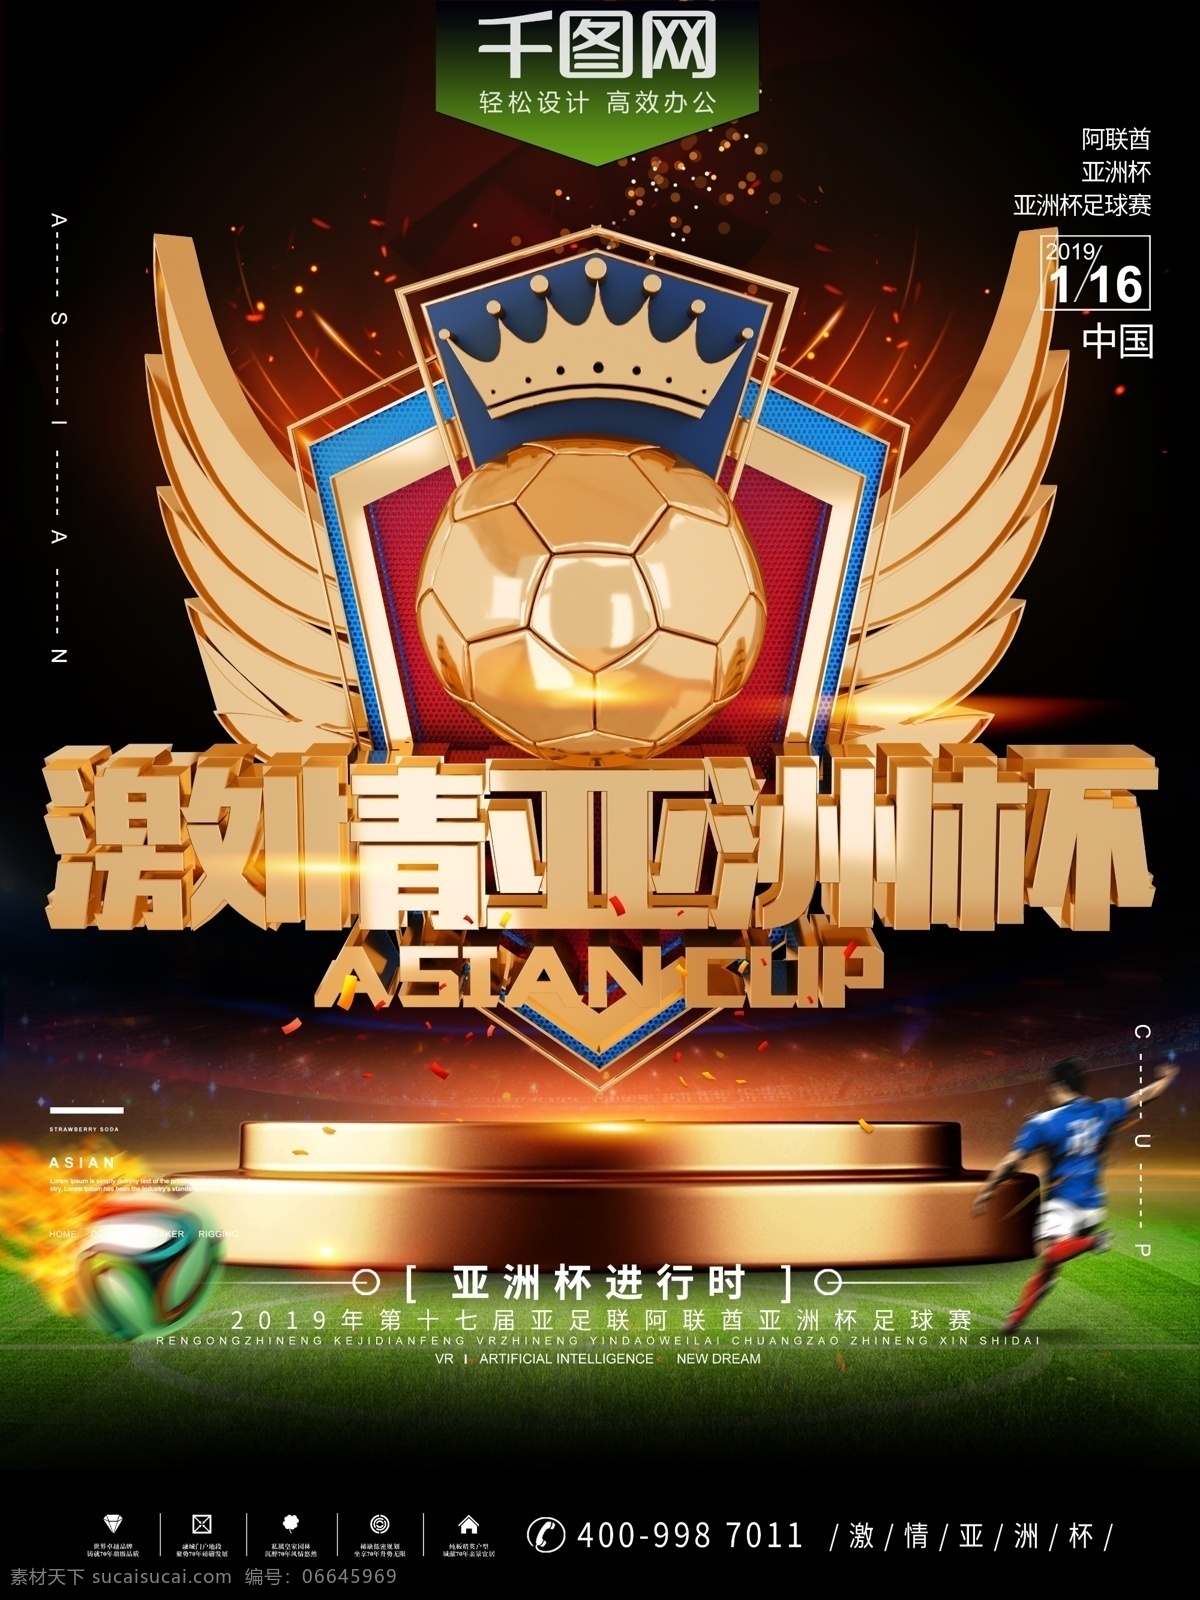 2019 亚洲杯 创意 体育 宣传海报 运动 足球 国足 第十七届